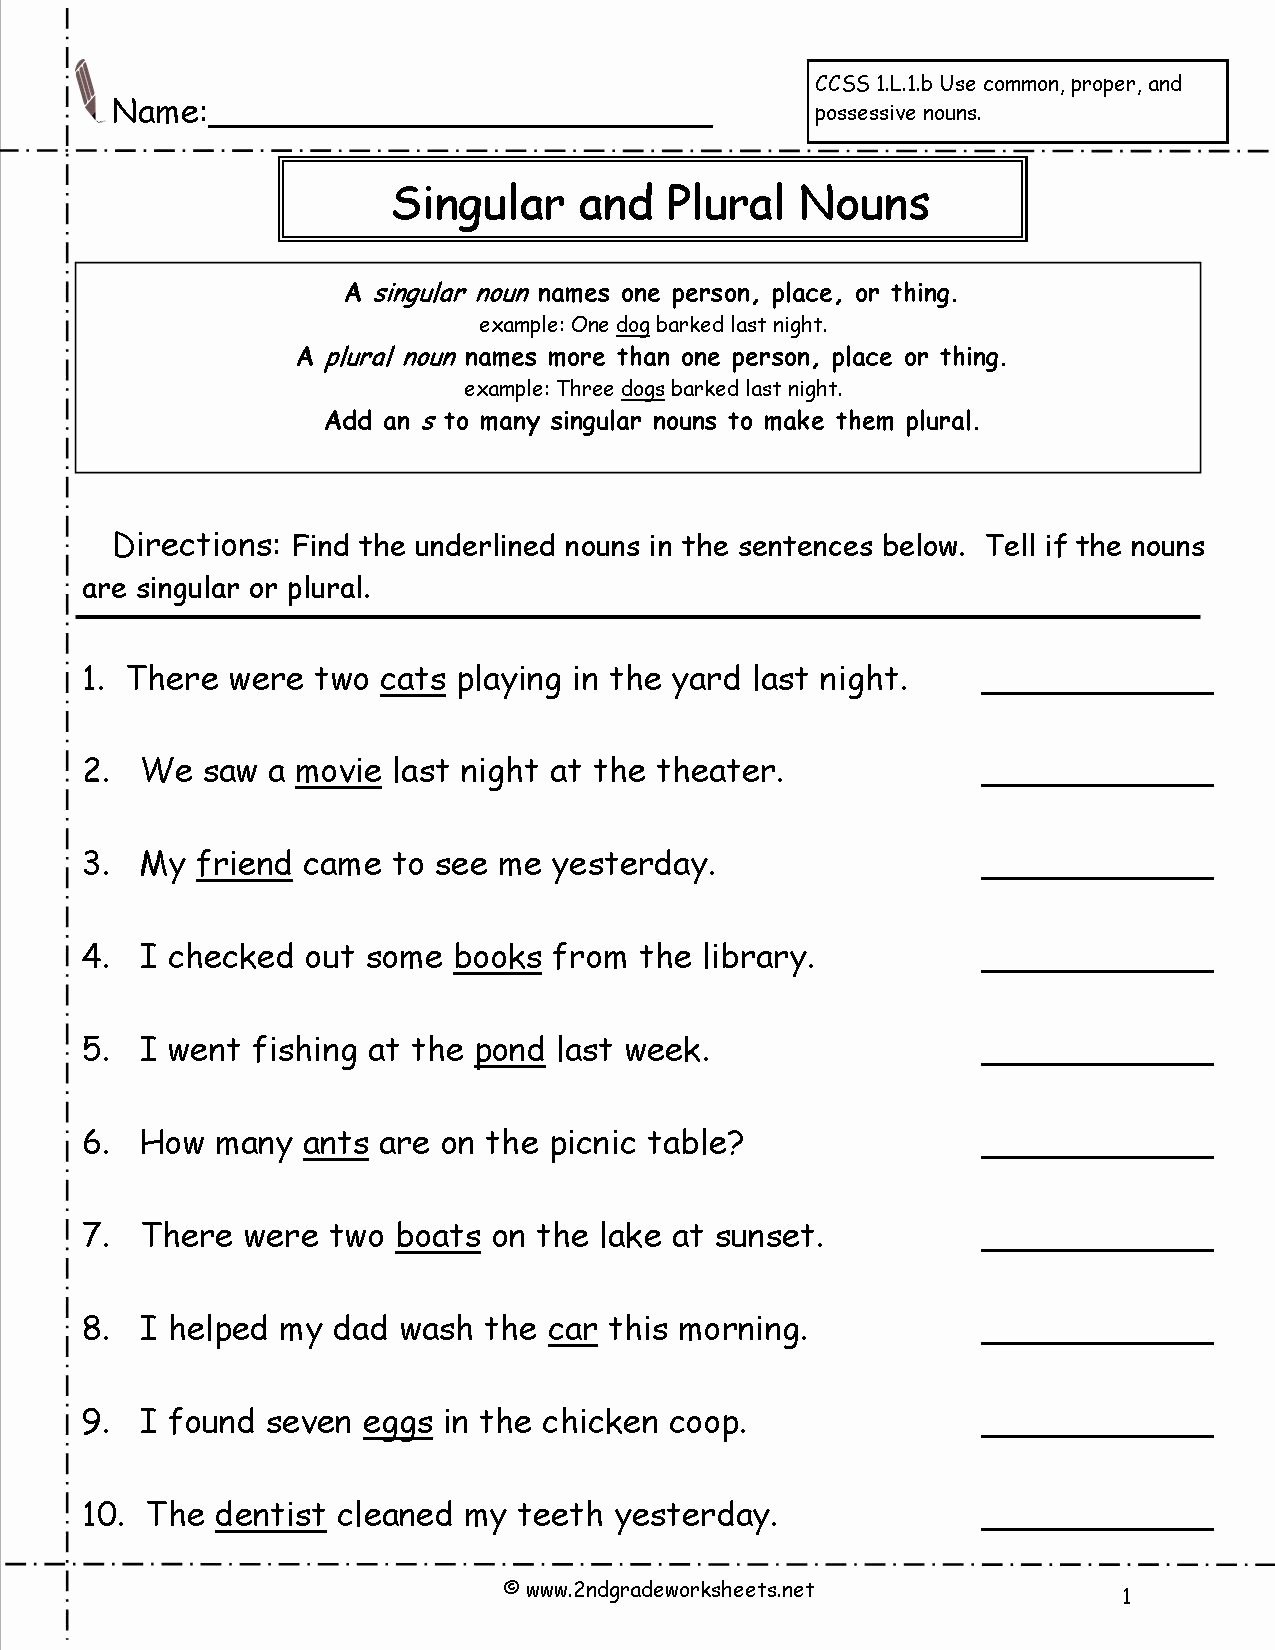 Singular and Plural Nouns Worksheet Lovely Singular and Plural Nouns Worksheets